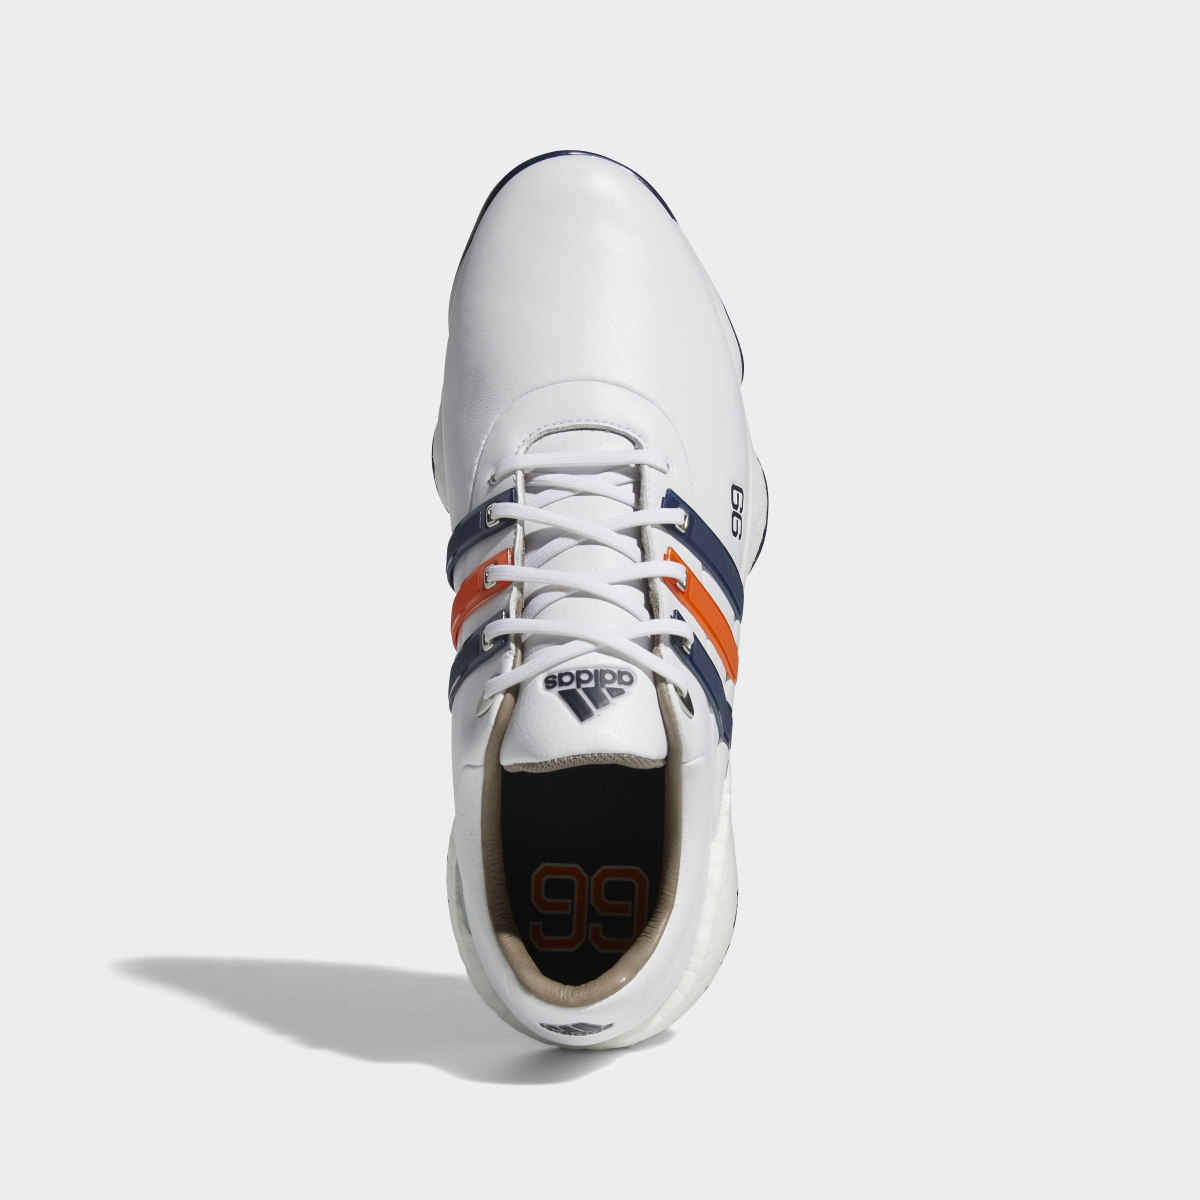 Adidas DJ Gretzky Tour360 22 Golf Shoes. 9